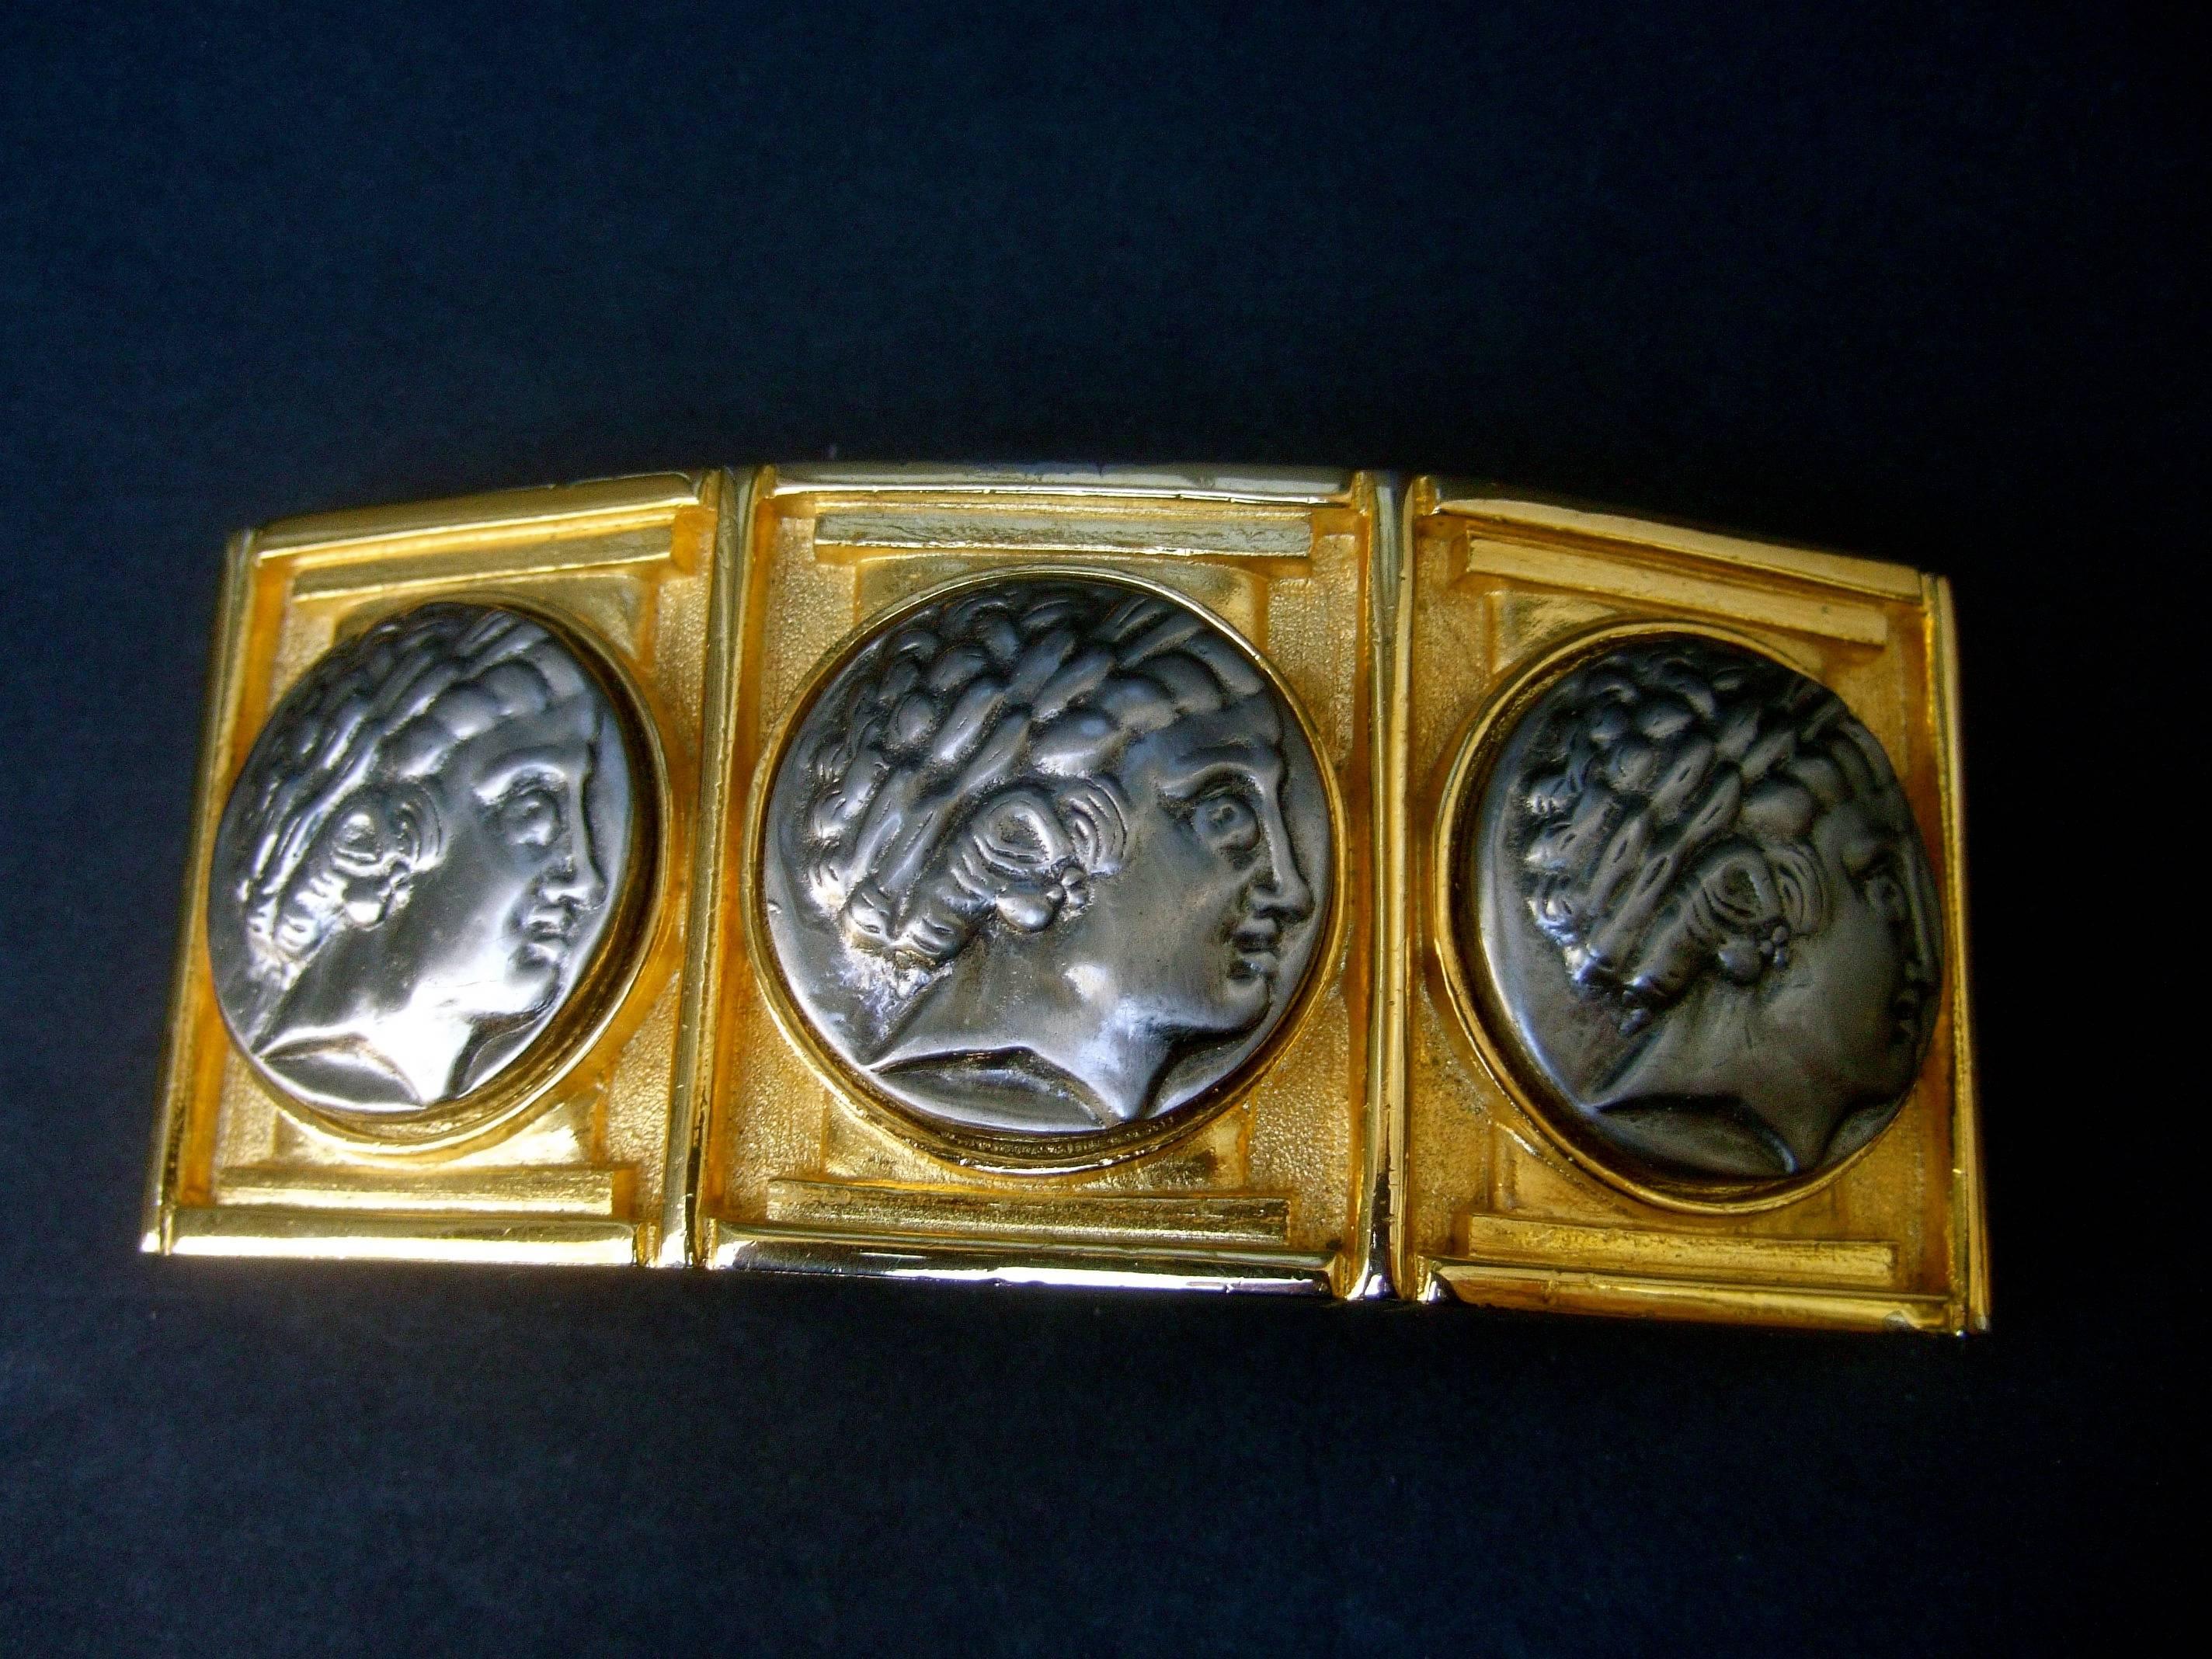 Alexis Kirk Boucle de ceinture massive en métal doré avec médaillon romain, datant des années 1980
La boucle de ceinture unique à l'échelle gigantesque est ornée d'un trio 
de médaillons à tête figurative de style romain en métal de couleur